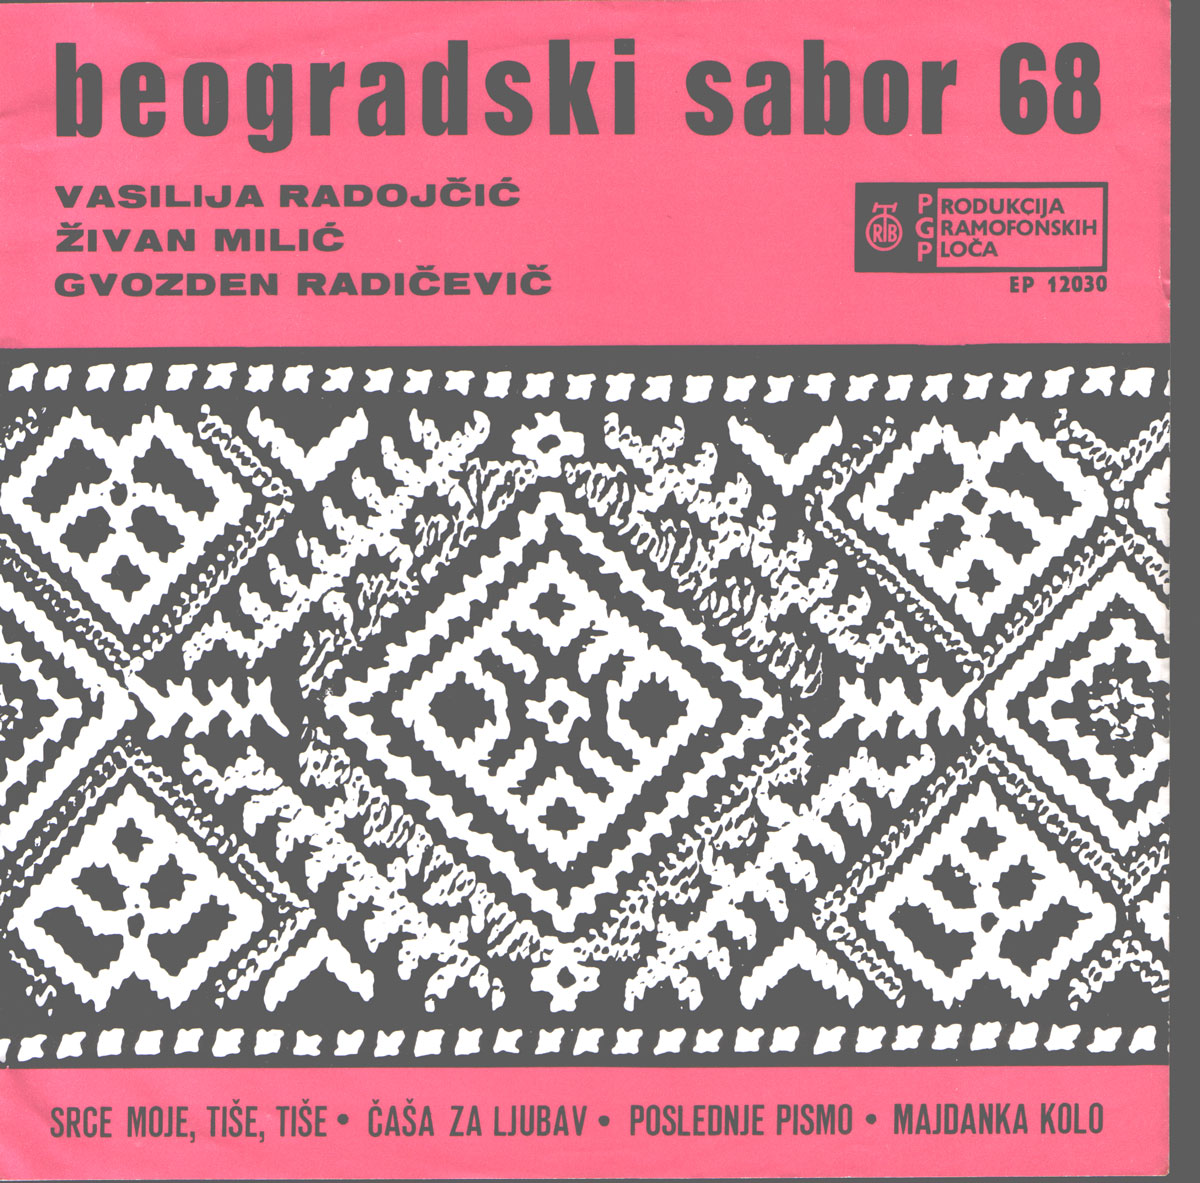 Bg Sabor 68 a